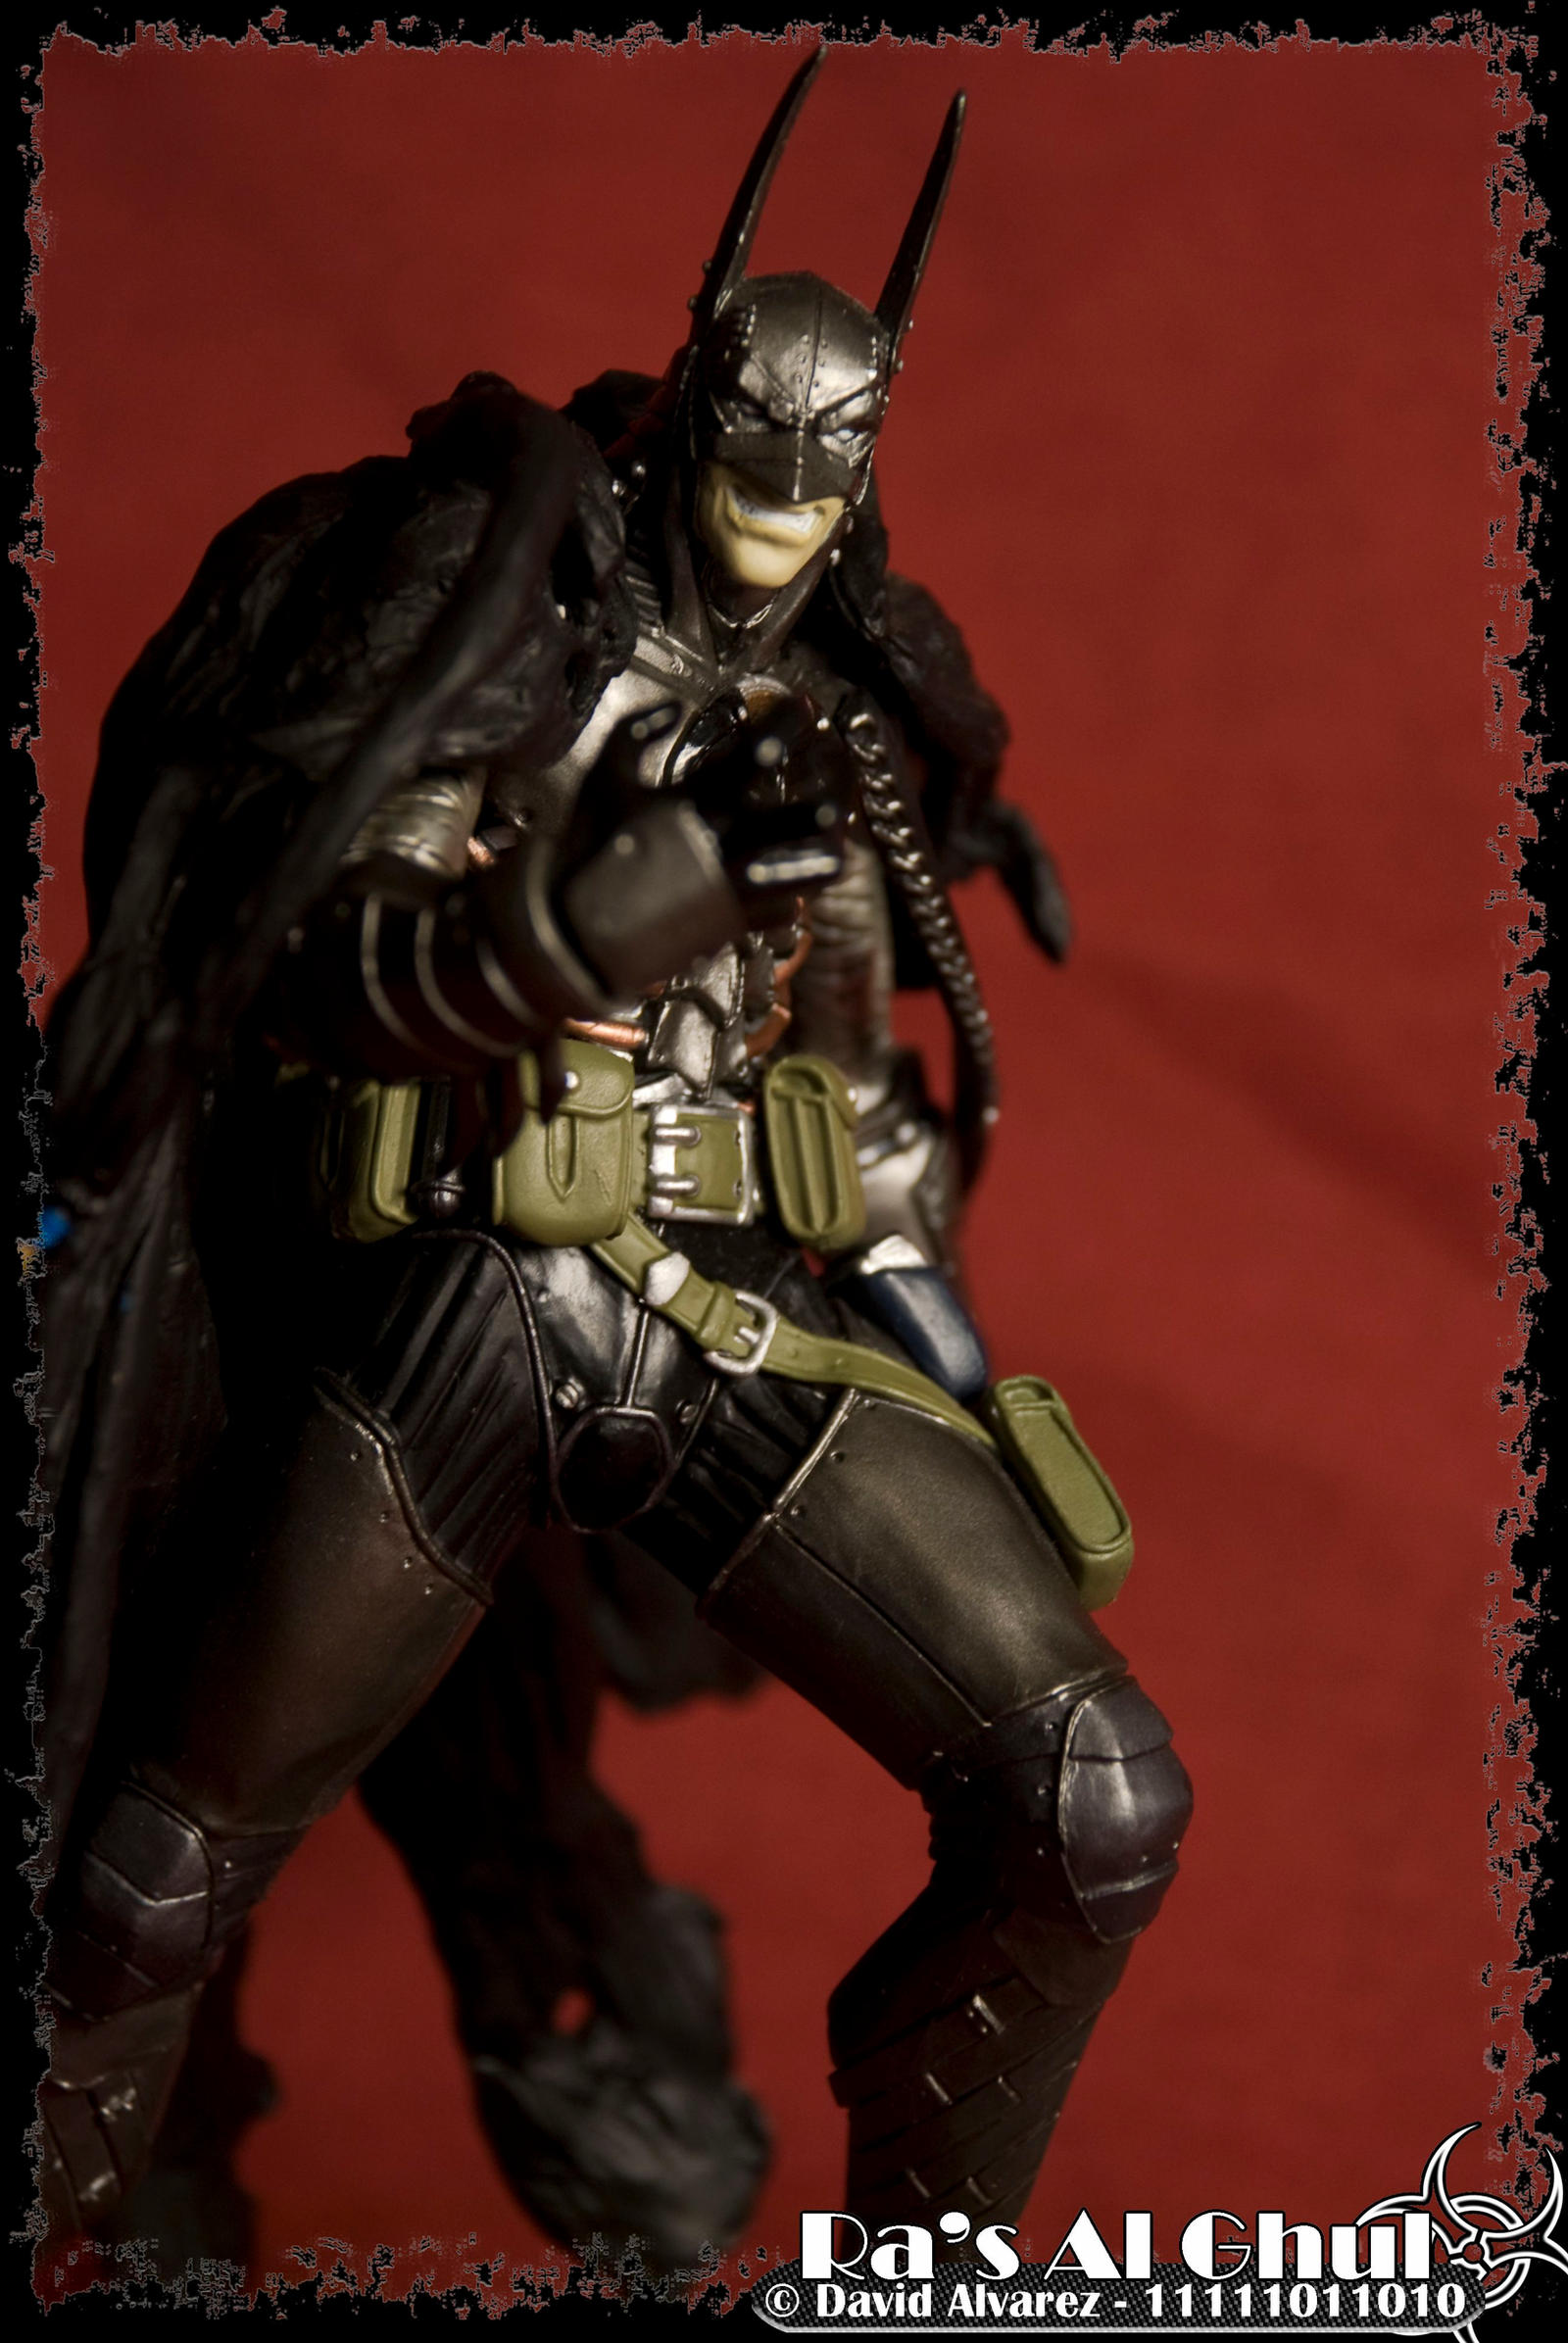 Evil Batman